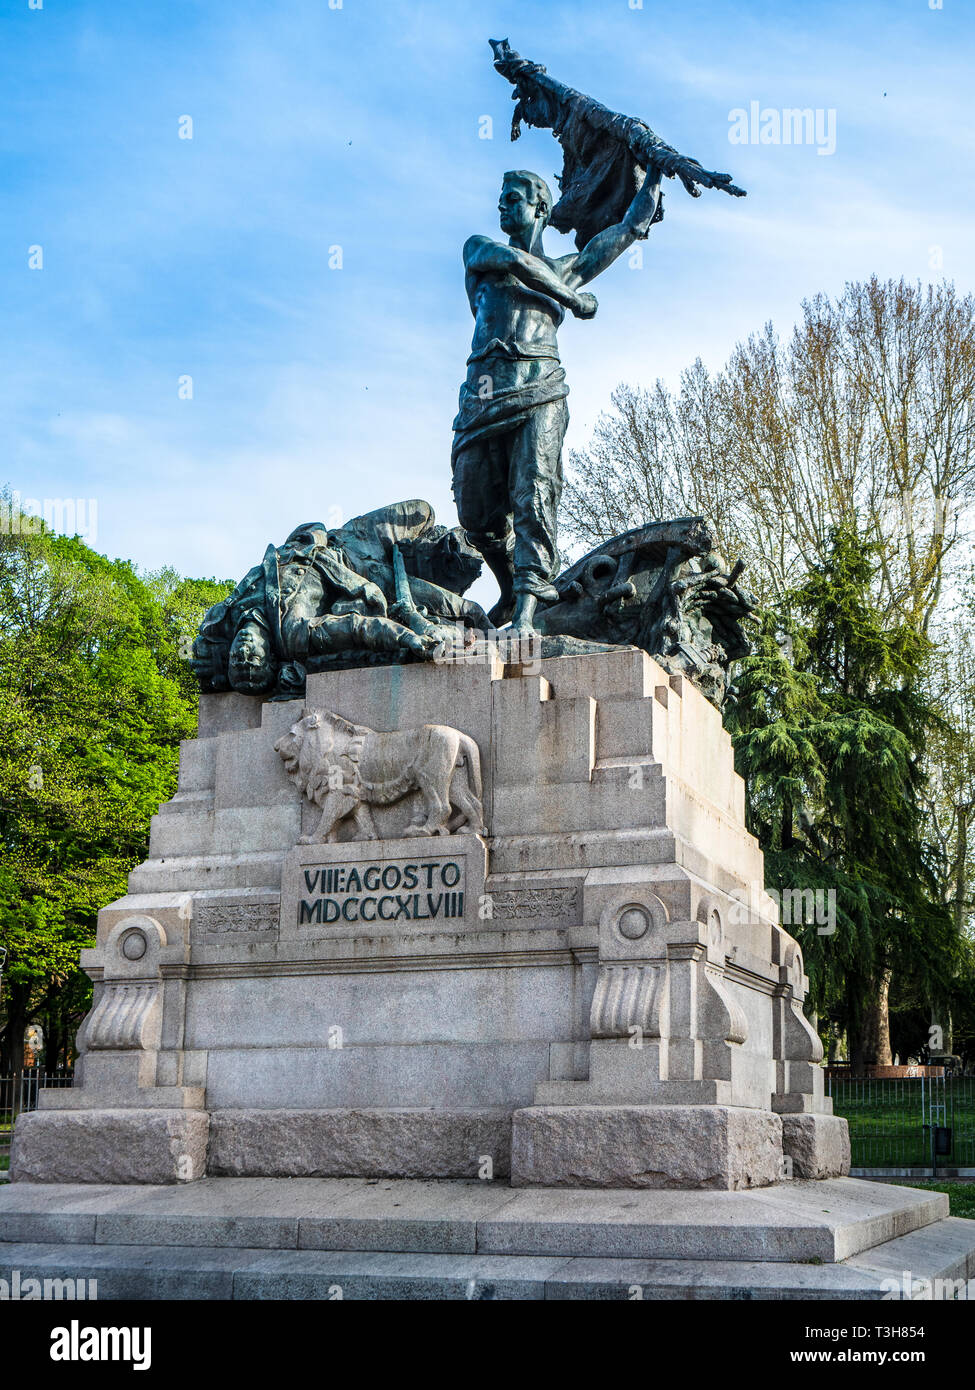 Popolano Kriegerdenkmal Bologna Italien - Memoria Statue, die Toten vom 8. August 1848 Kampf um die Unabhängigkeit gegen die österreichische Armee. Stockfoto